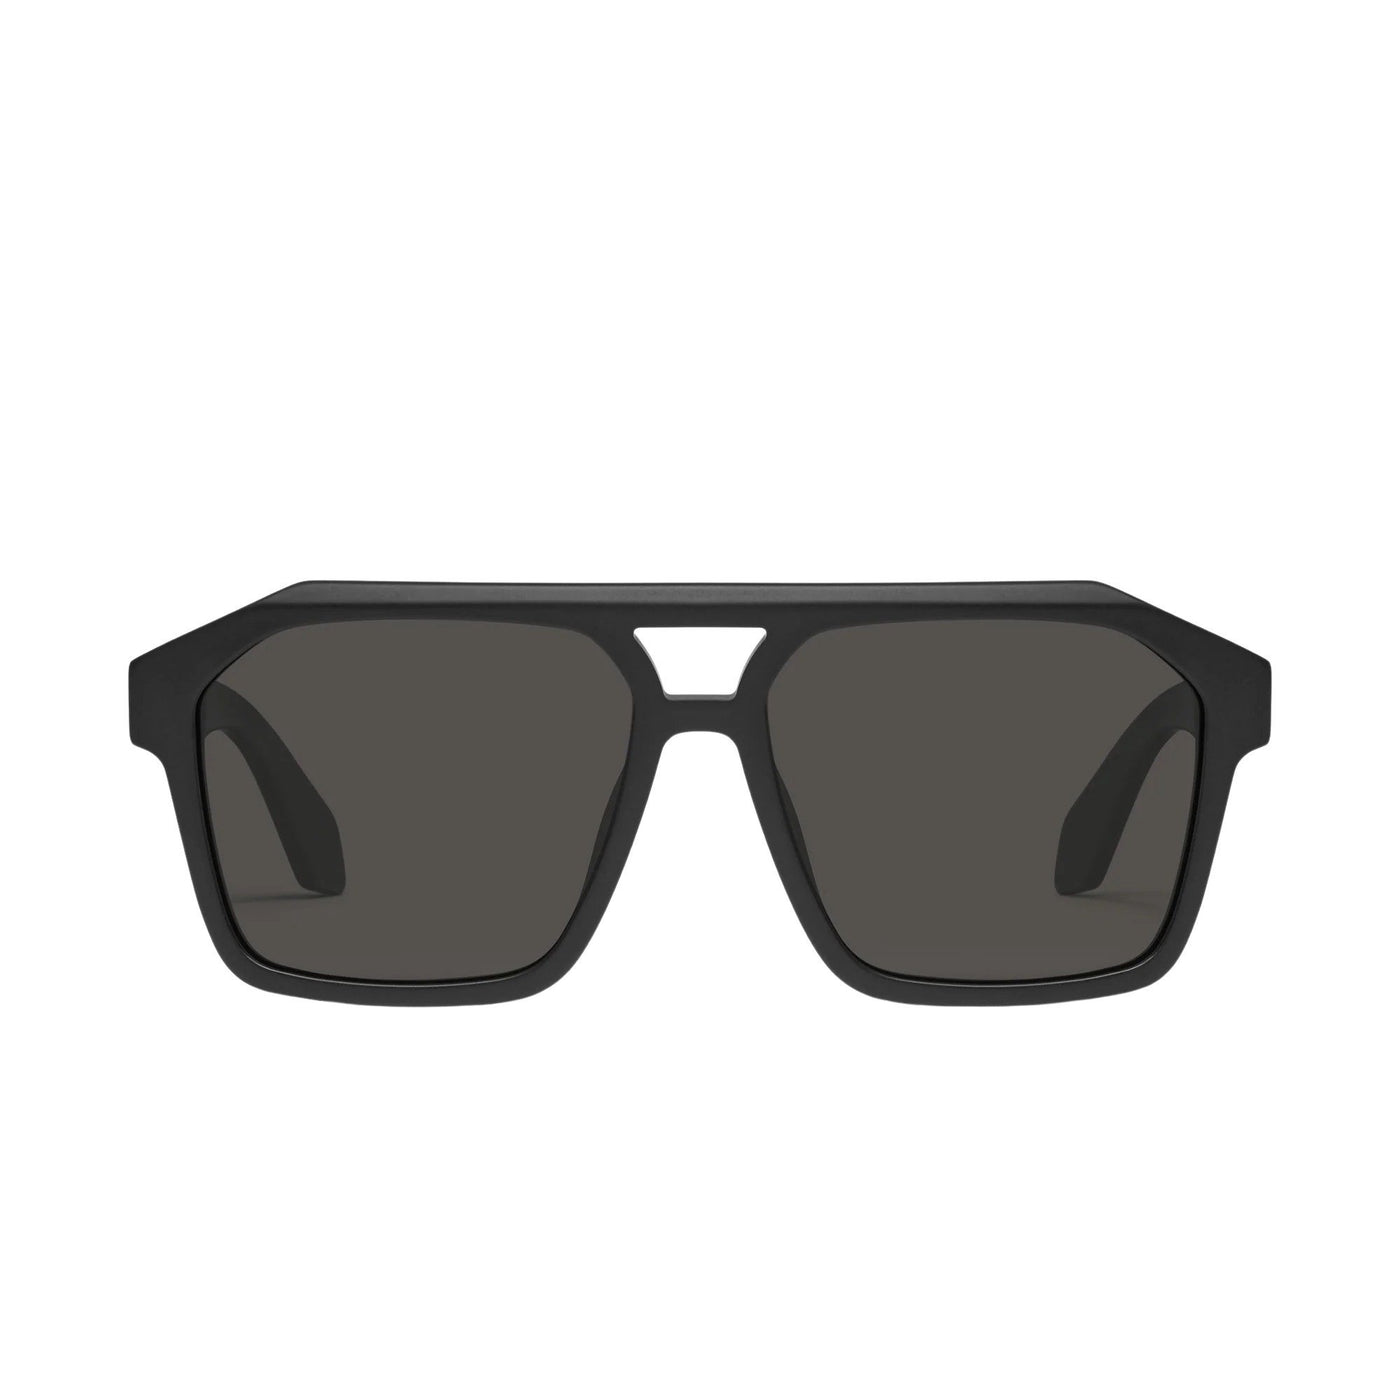 Quay Women's Soundcheck Modern Aviator Sunglasses (Matte Black Frame/Black Polarized Lens) - front